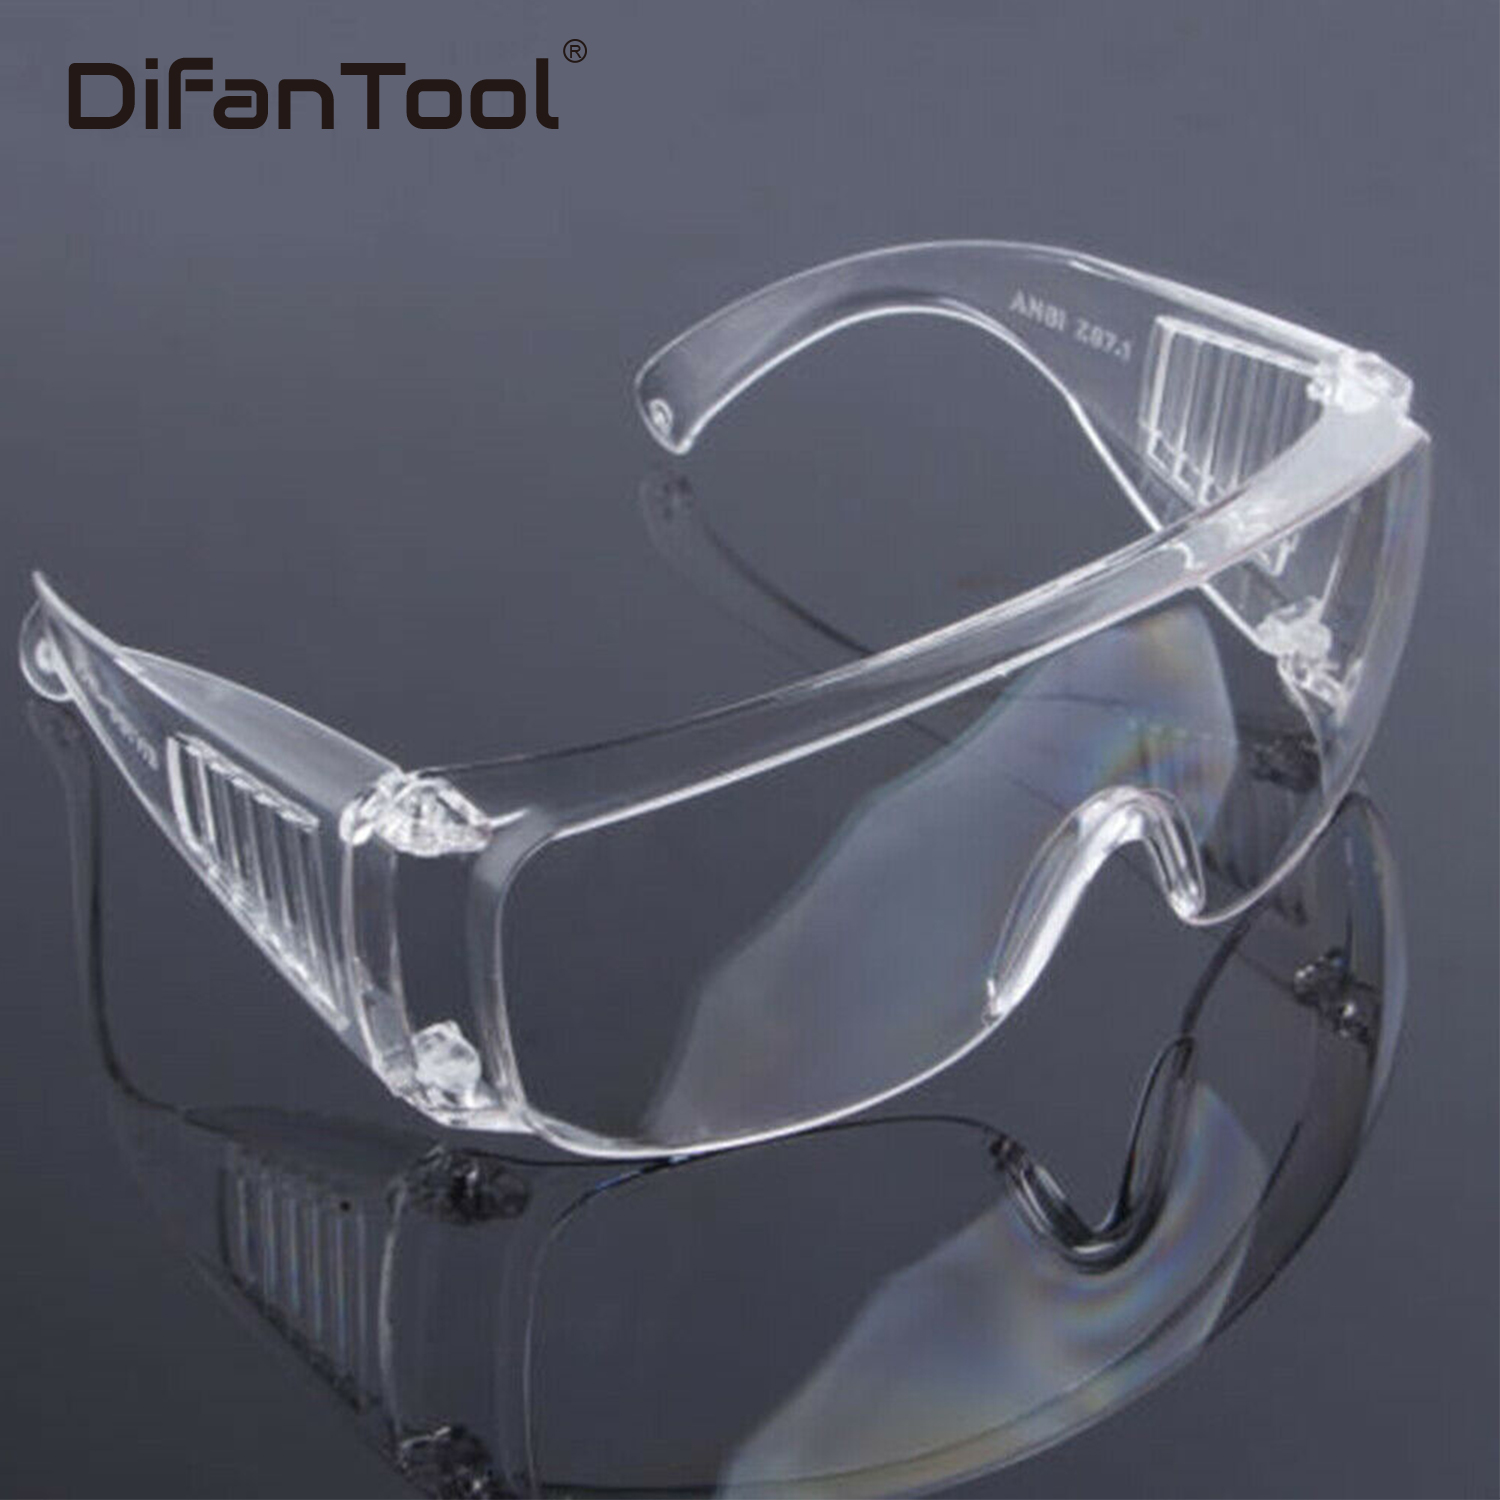 Очки защитные стеклянные. Очки защитные spectacles cr01, transparent. Очк304 (о-13011) очки защитные открытые (прозрачные). Очки защитные clean+safe оранжевые HB-s03aor. Очки hogies стоматологические.